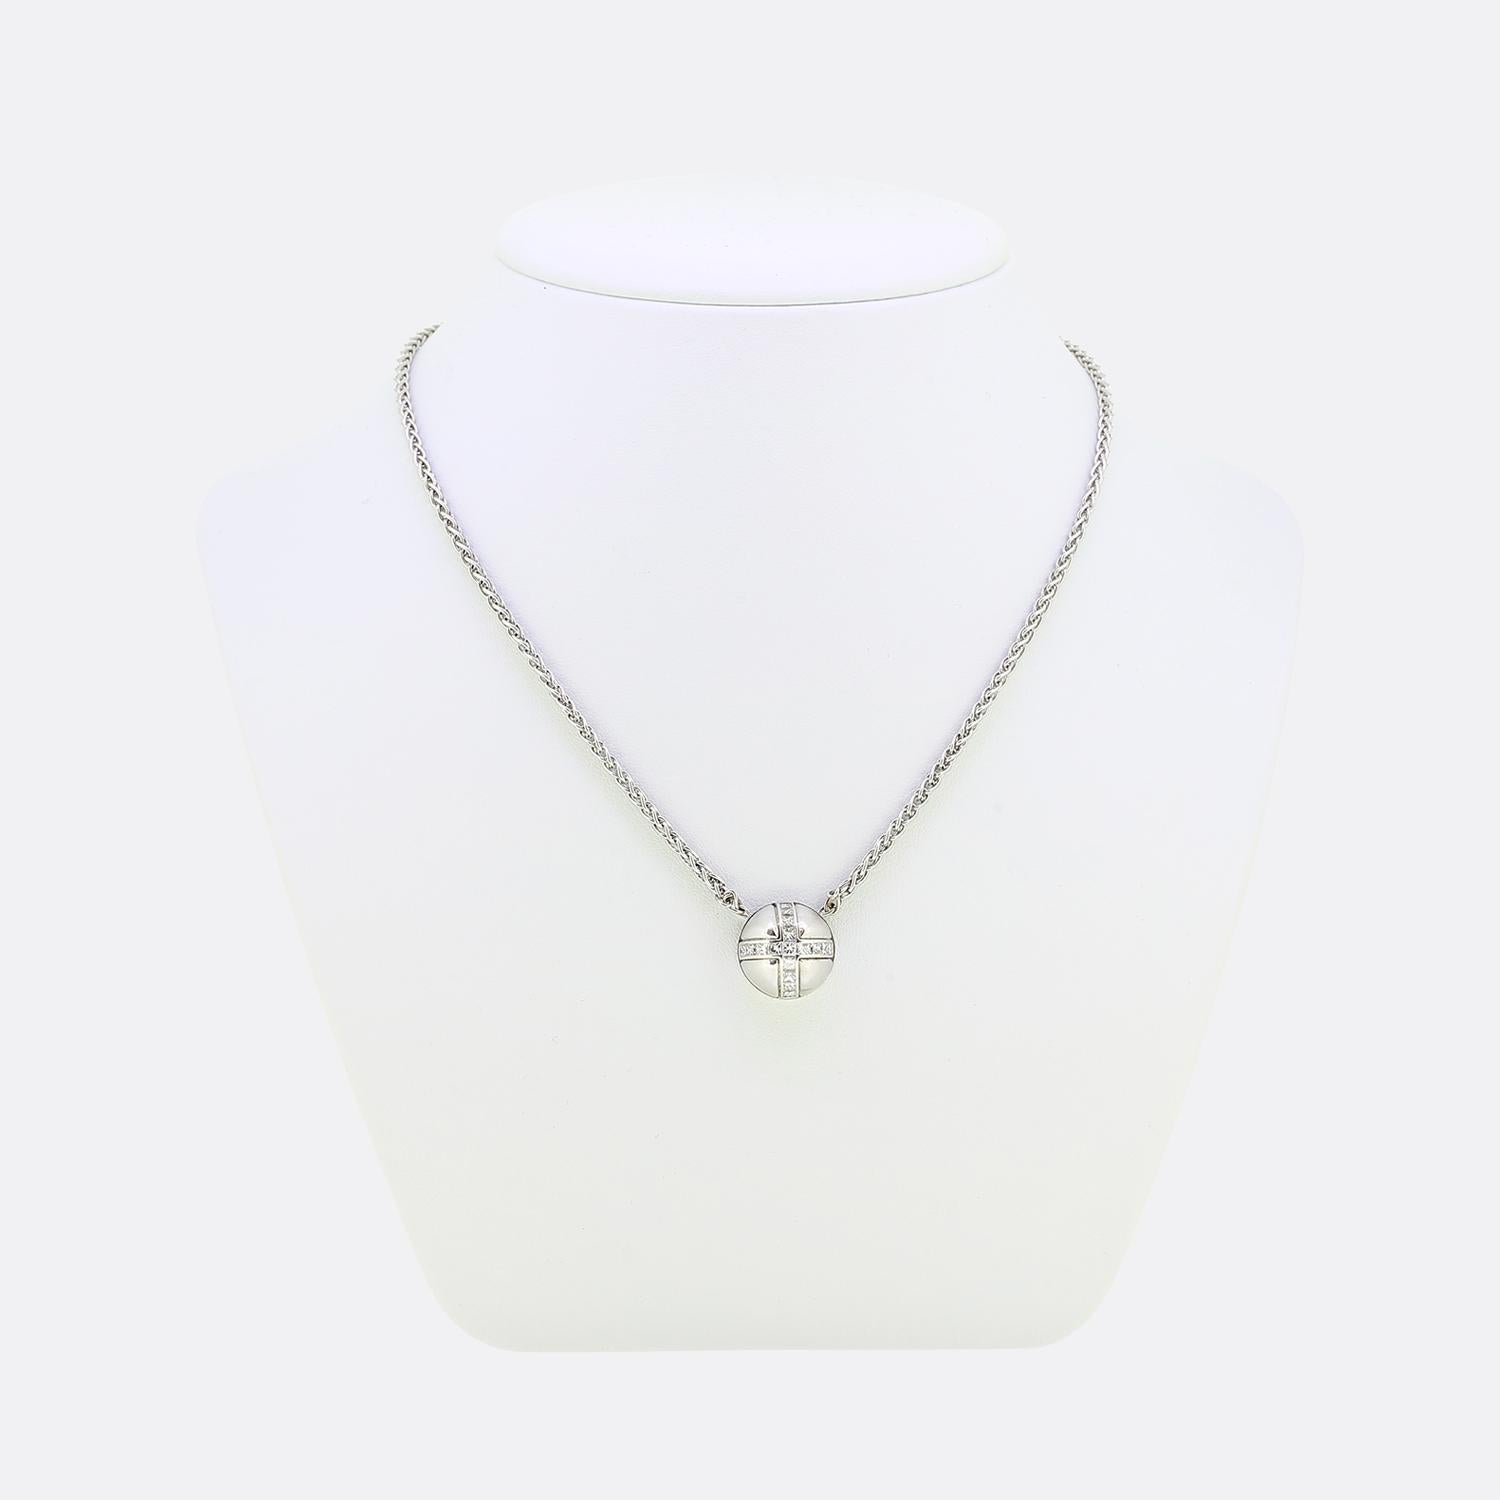 Il s'agit d'un collier pendentif en or blanc 18 ct du créateur Garrard. La chaîne est de style blé et comporte un pendentif en forme de dôme serti de 17 diamants de taille princesse en forme de croix. Depuis 1735, Garrard crée des bijoux de qualité,